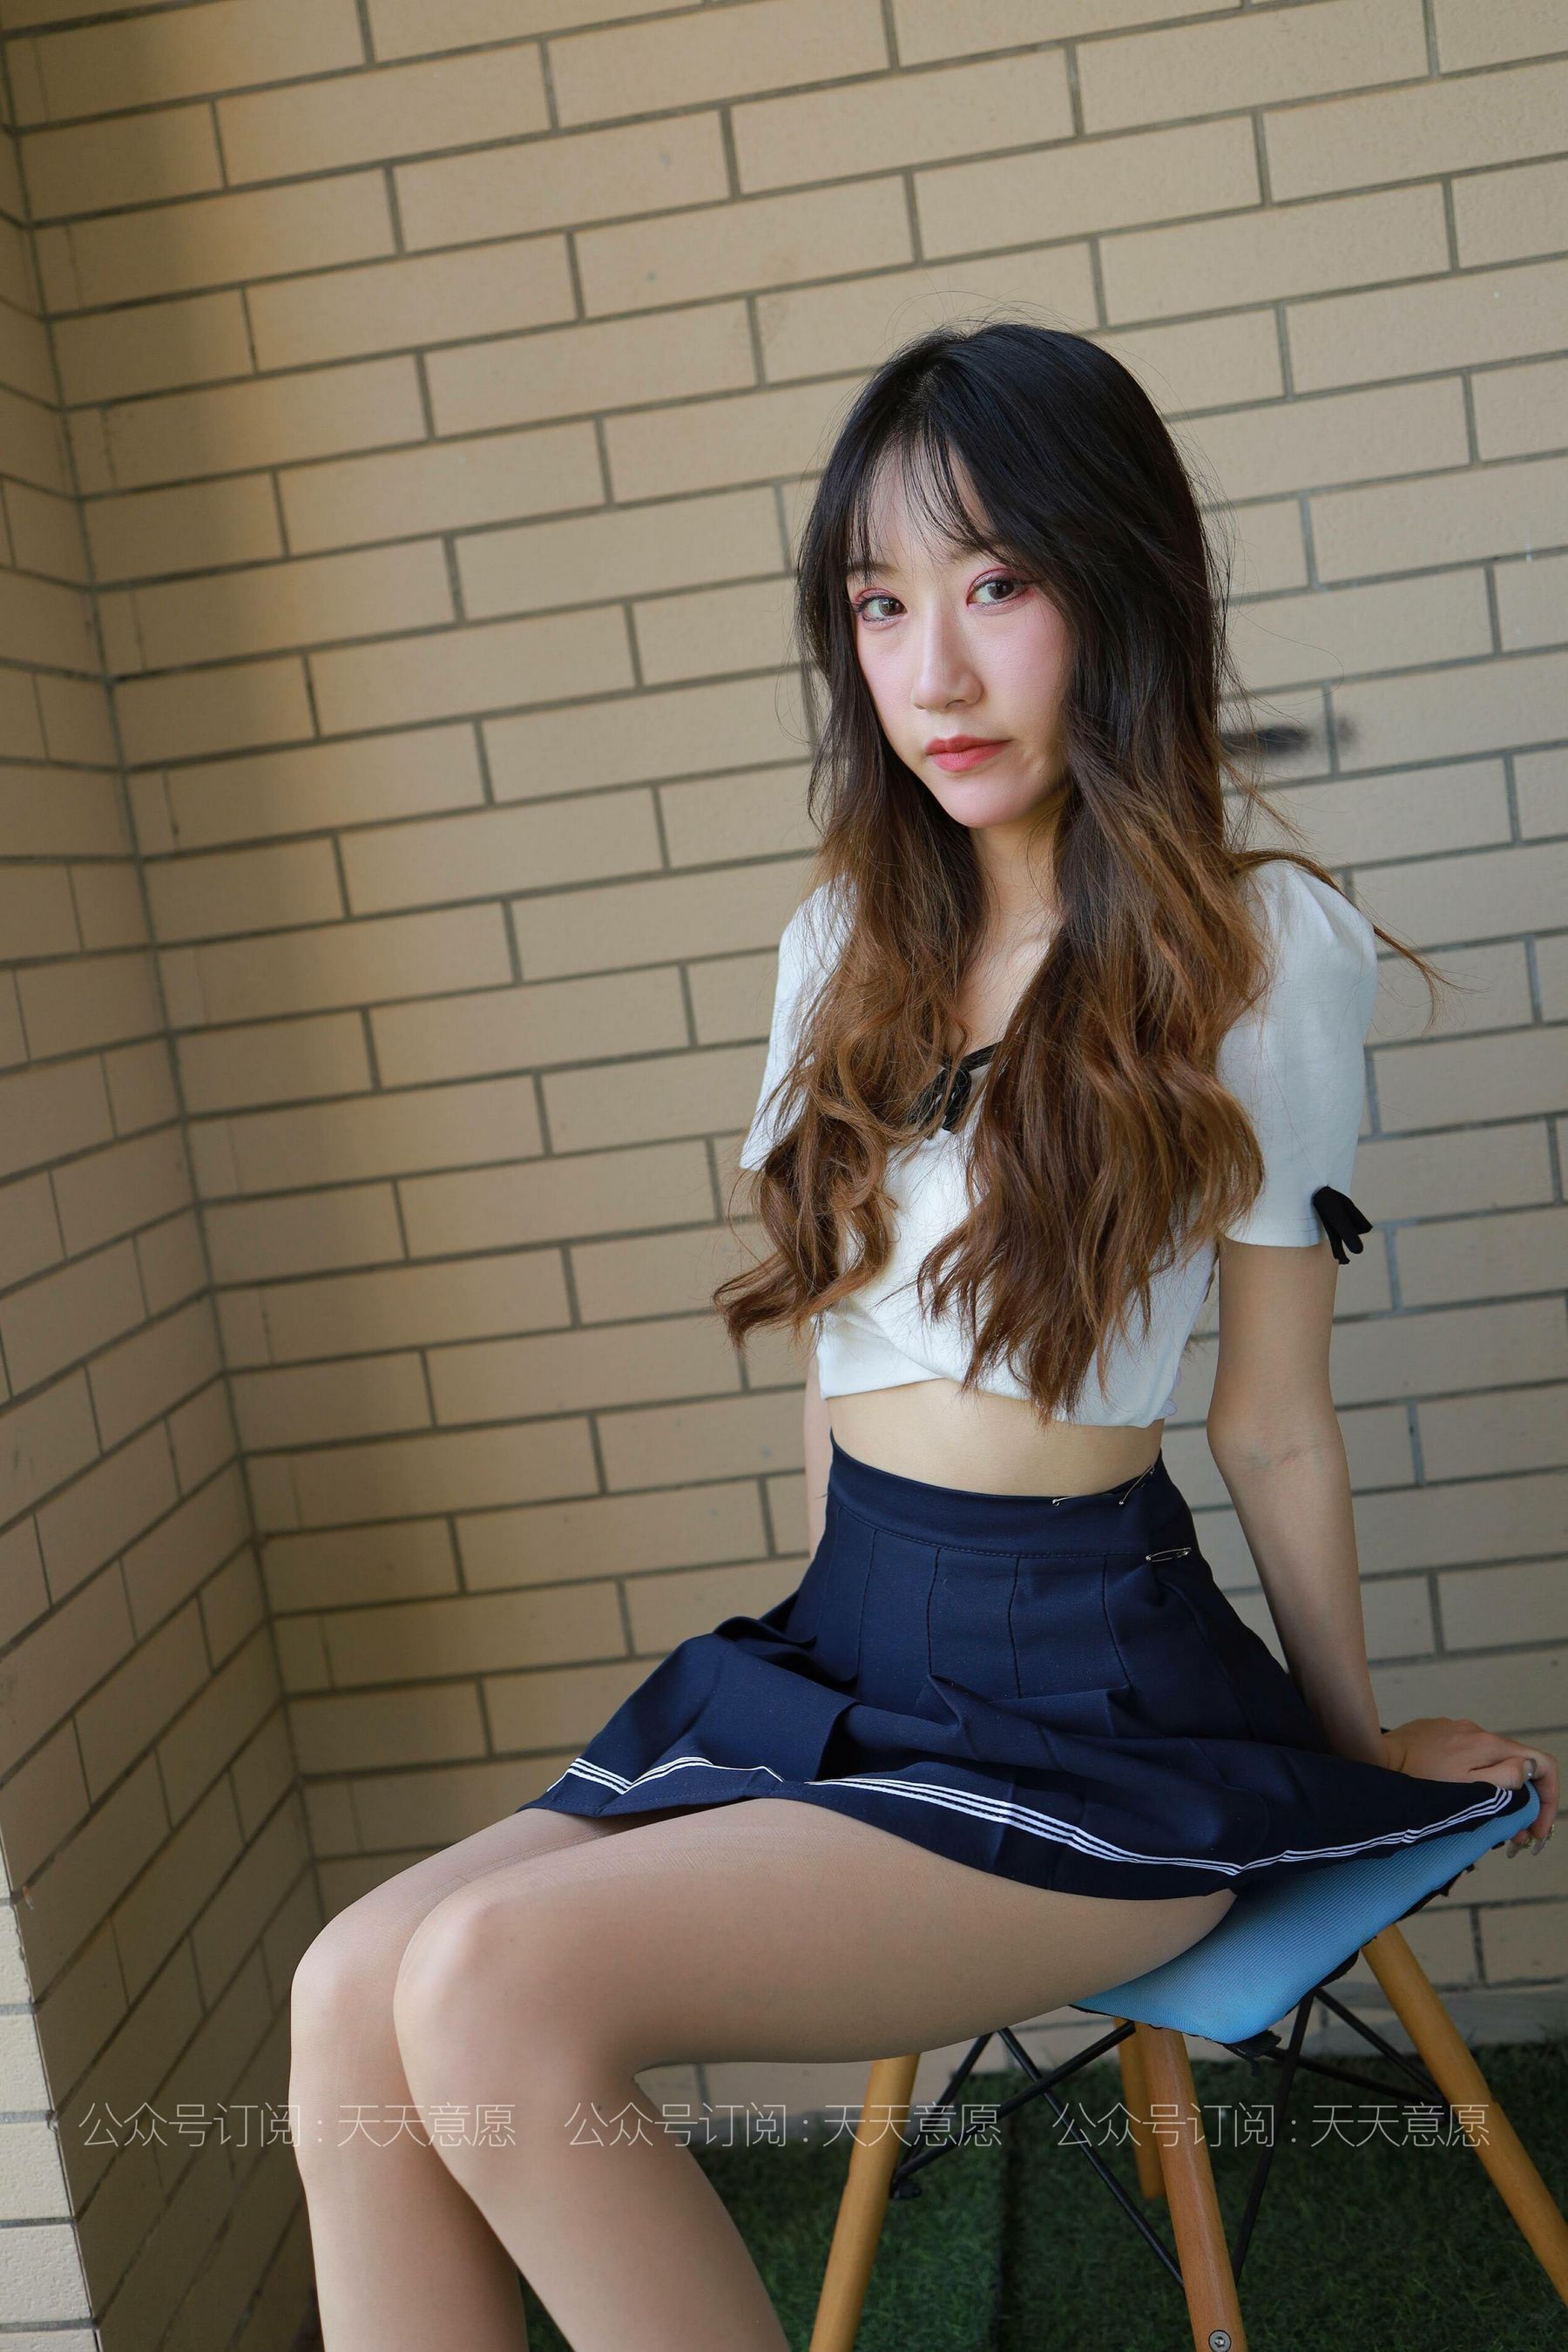 [IESS 奇思趣向] Modell: Yiyi „Mädchen mit langen Beinen“ Seite 45 No.740880